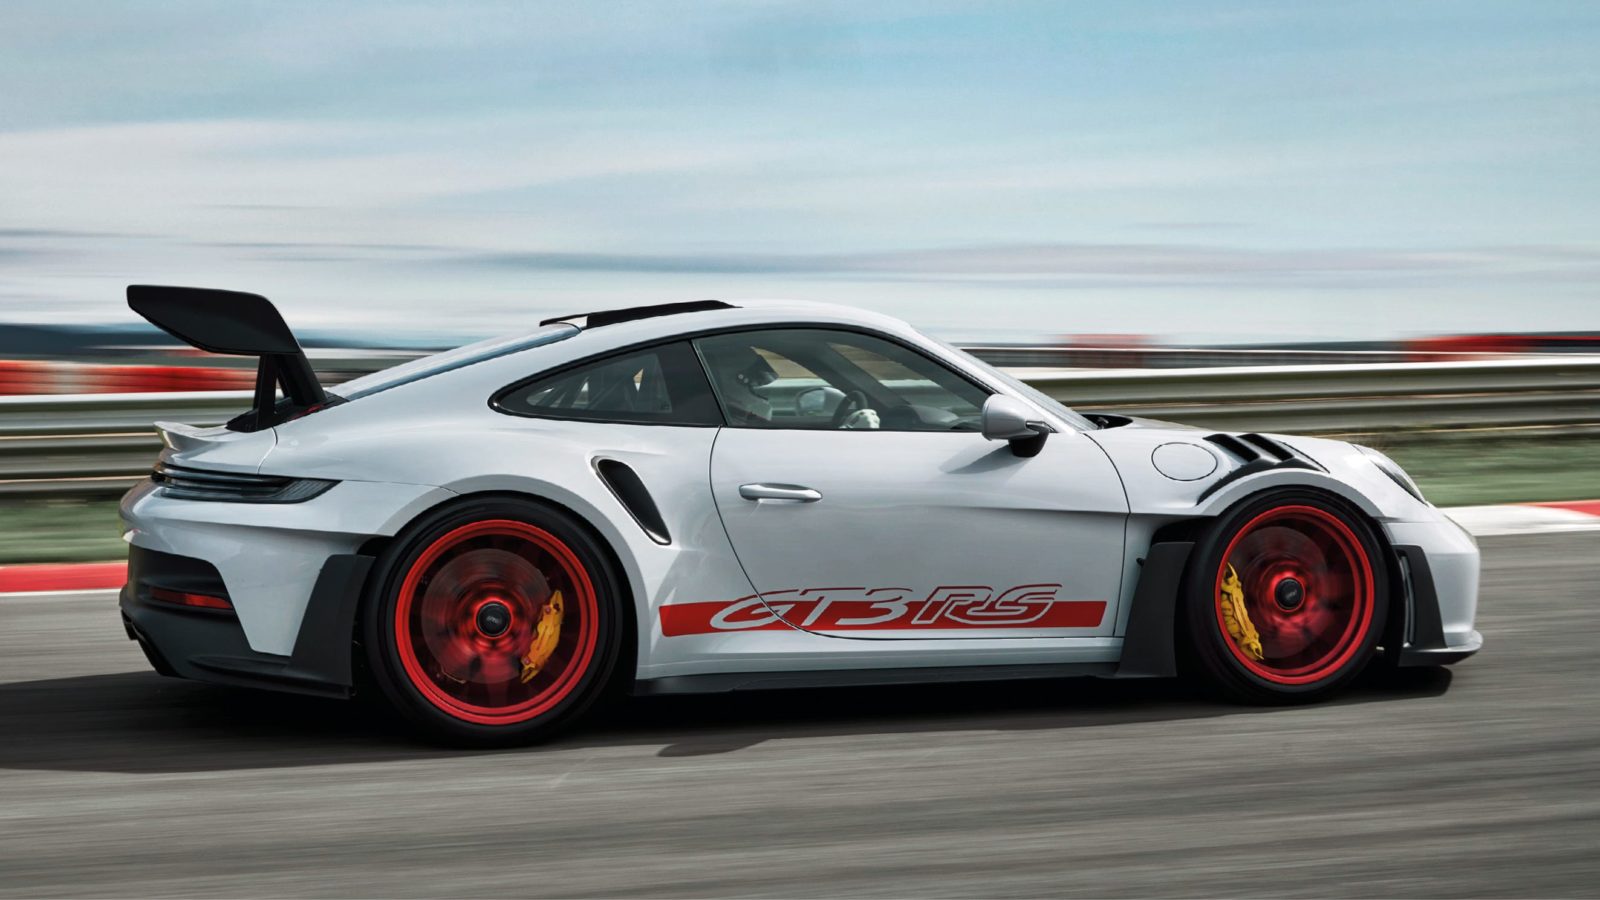 Porsche GT3 RS exterior